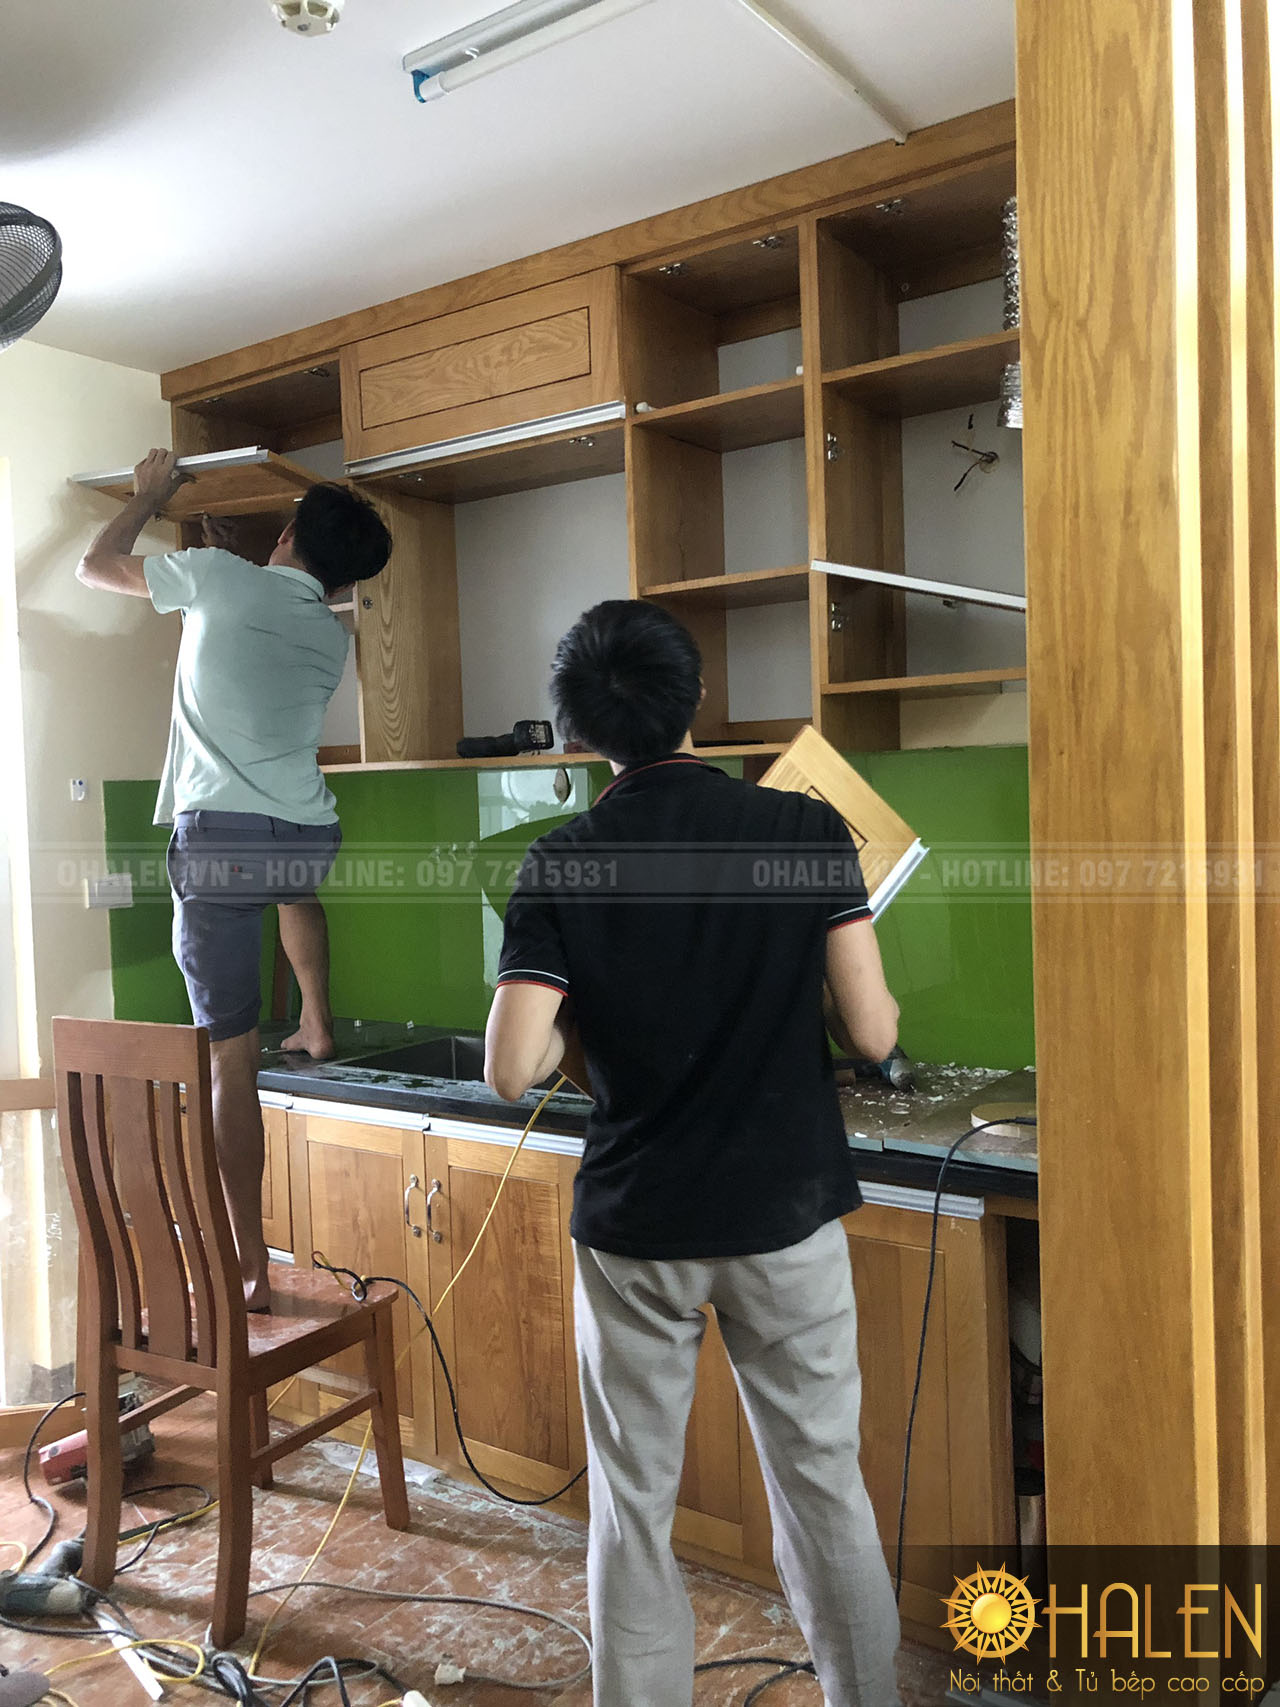 Thợ thi công đang tiến hành lắp đặt tủ bếp - chất liệu gỗ sồi tự nhiên